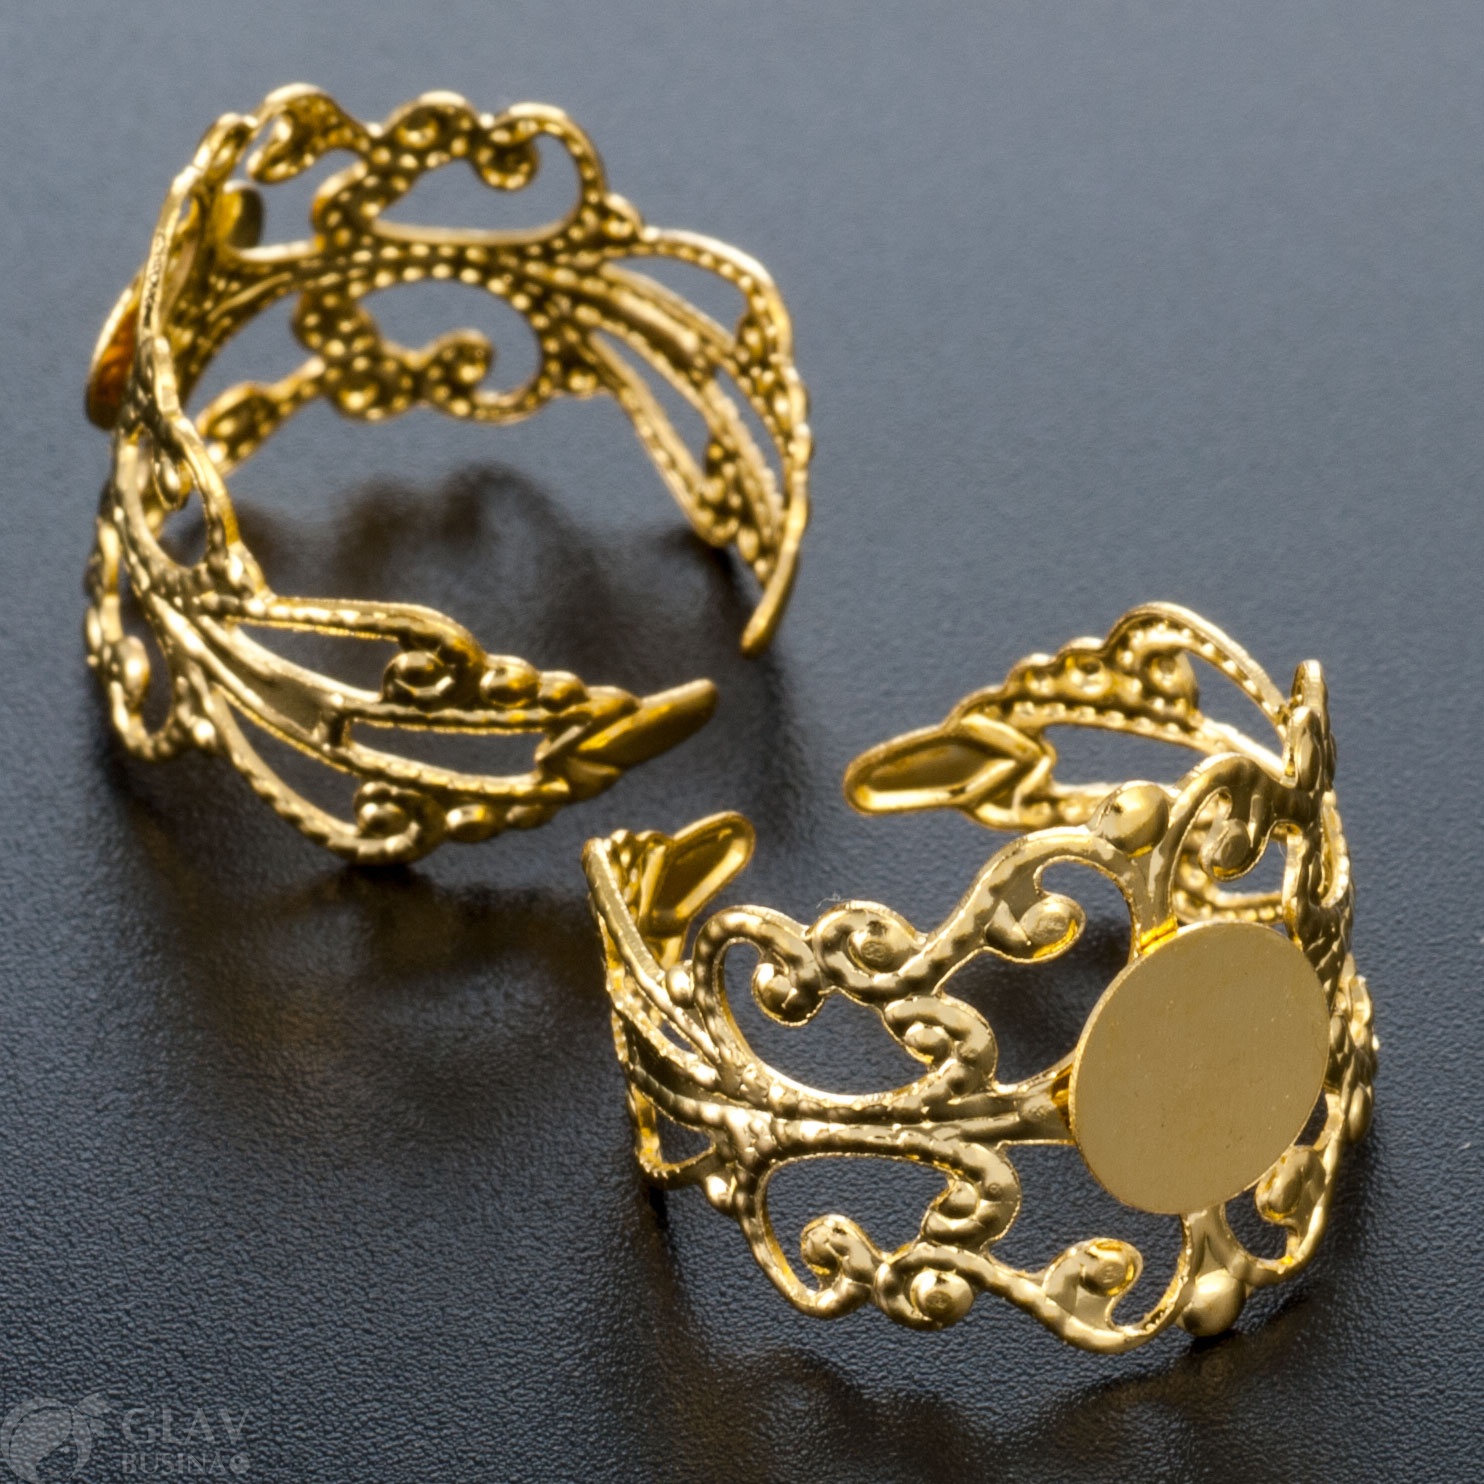 Ажурное кольцо из железа с площадкой 8мм, внутренним диаметром 18мм и регулируемым размером. Цвет - желтое золото. Привлекательное и информативное изделие для стильного образа.